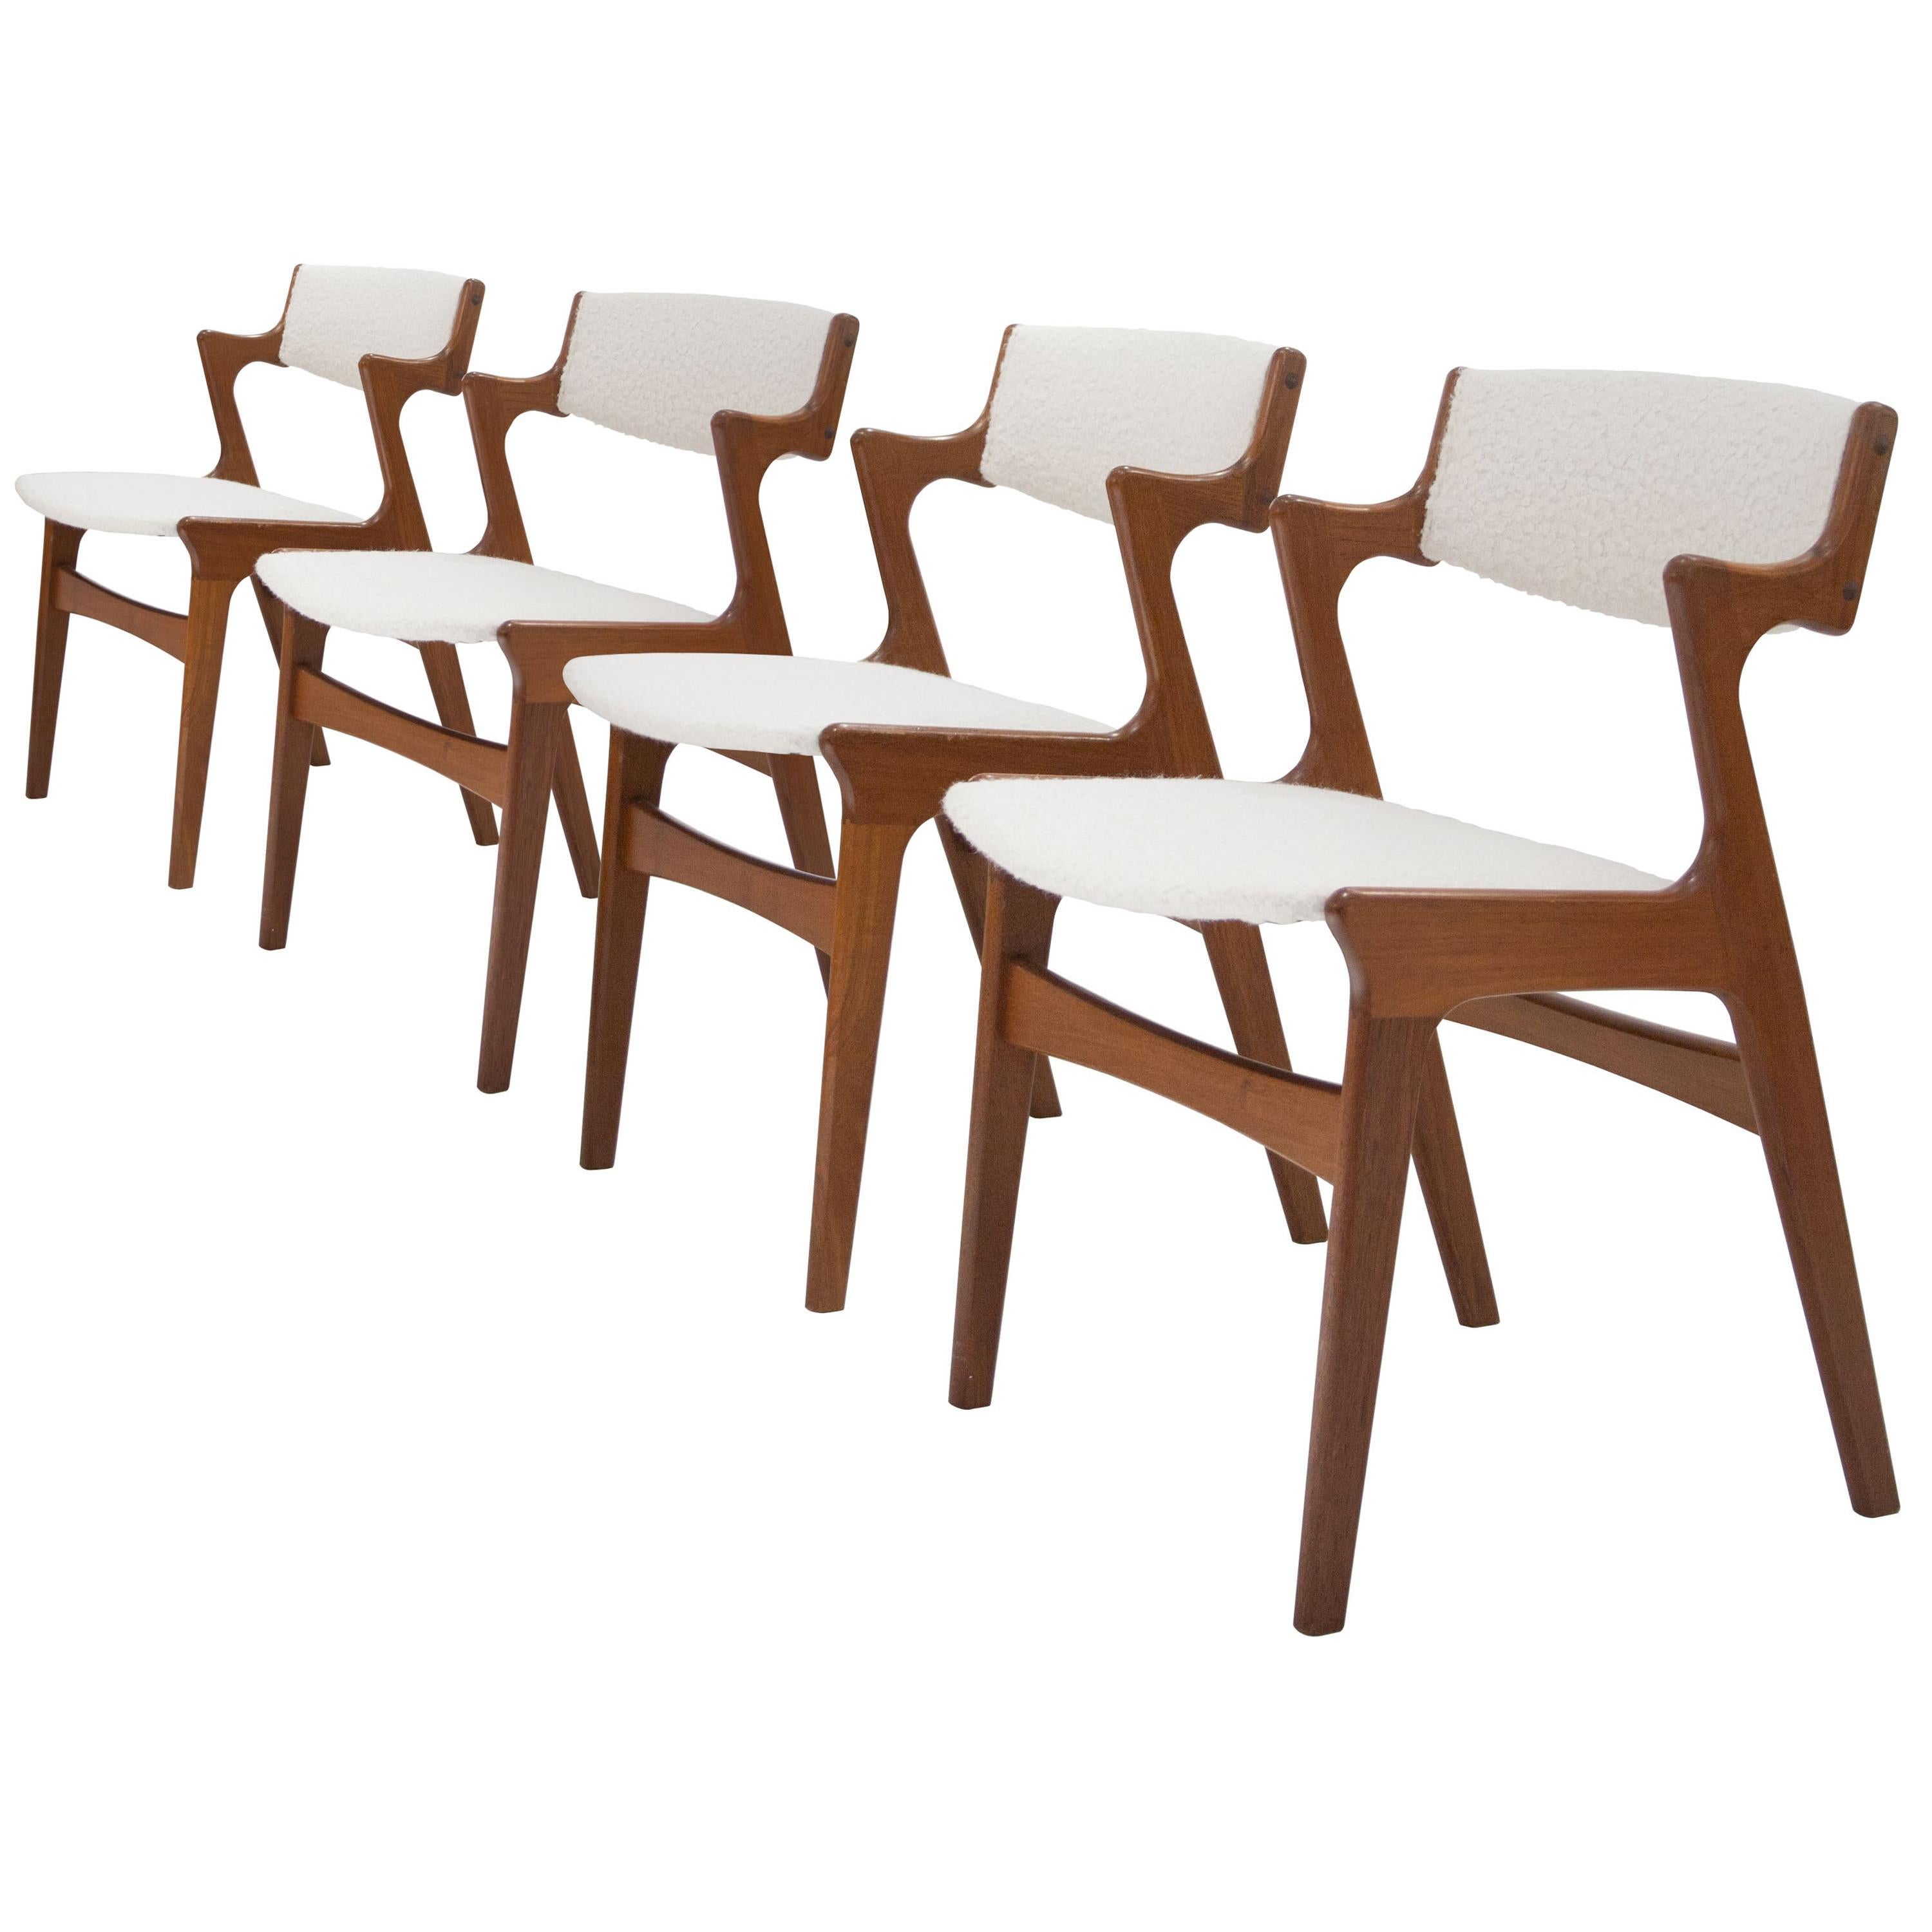 After Kai Kristiansen Teak Wool Bouclé Set of 4 Dining Chairs, Denmark, 1960